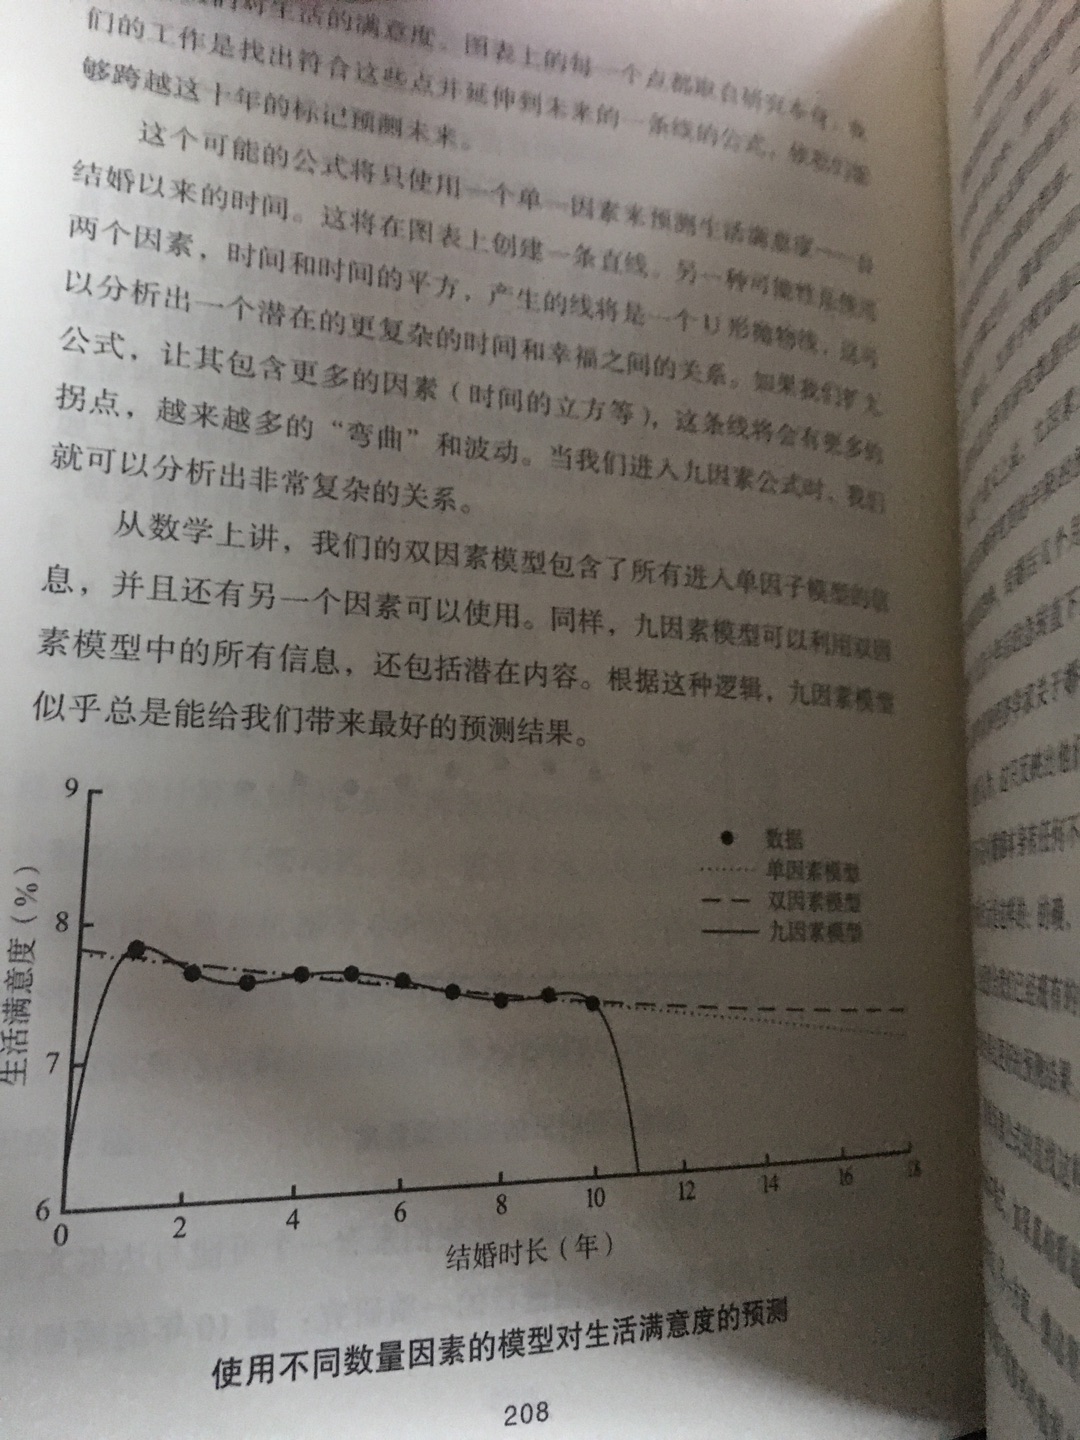 万维钢推荐的好书，终于出中文版了，指导生活工作要会点算法。